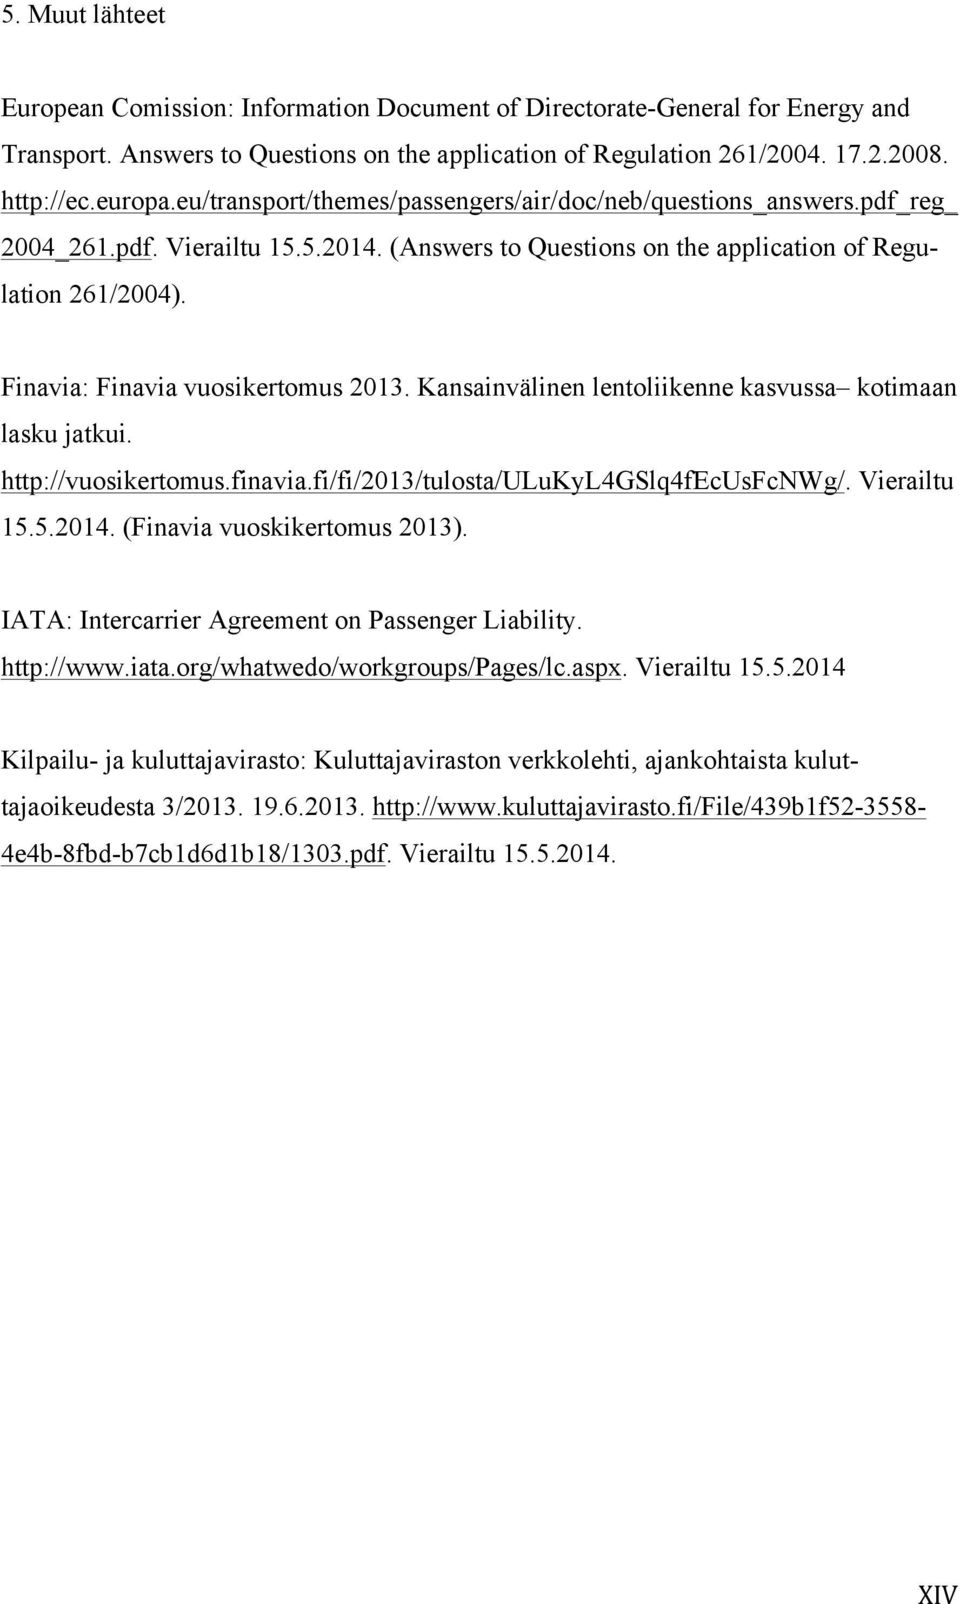 Finavia: Finavia vuosikertomus 2013. Kansainvälinen lentoliikenne kasvussa kotimaan lasku jatkui. http://vuosikertomus.finavia.fi/fi/2013/tulosta/ulukyl4gslq4fecusfcnwg/. Vierailtu 15.5.2014.